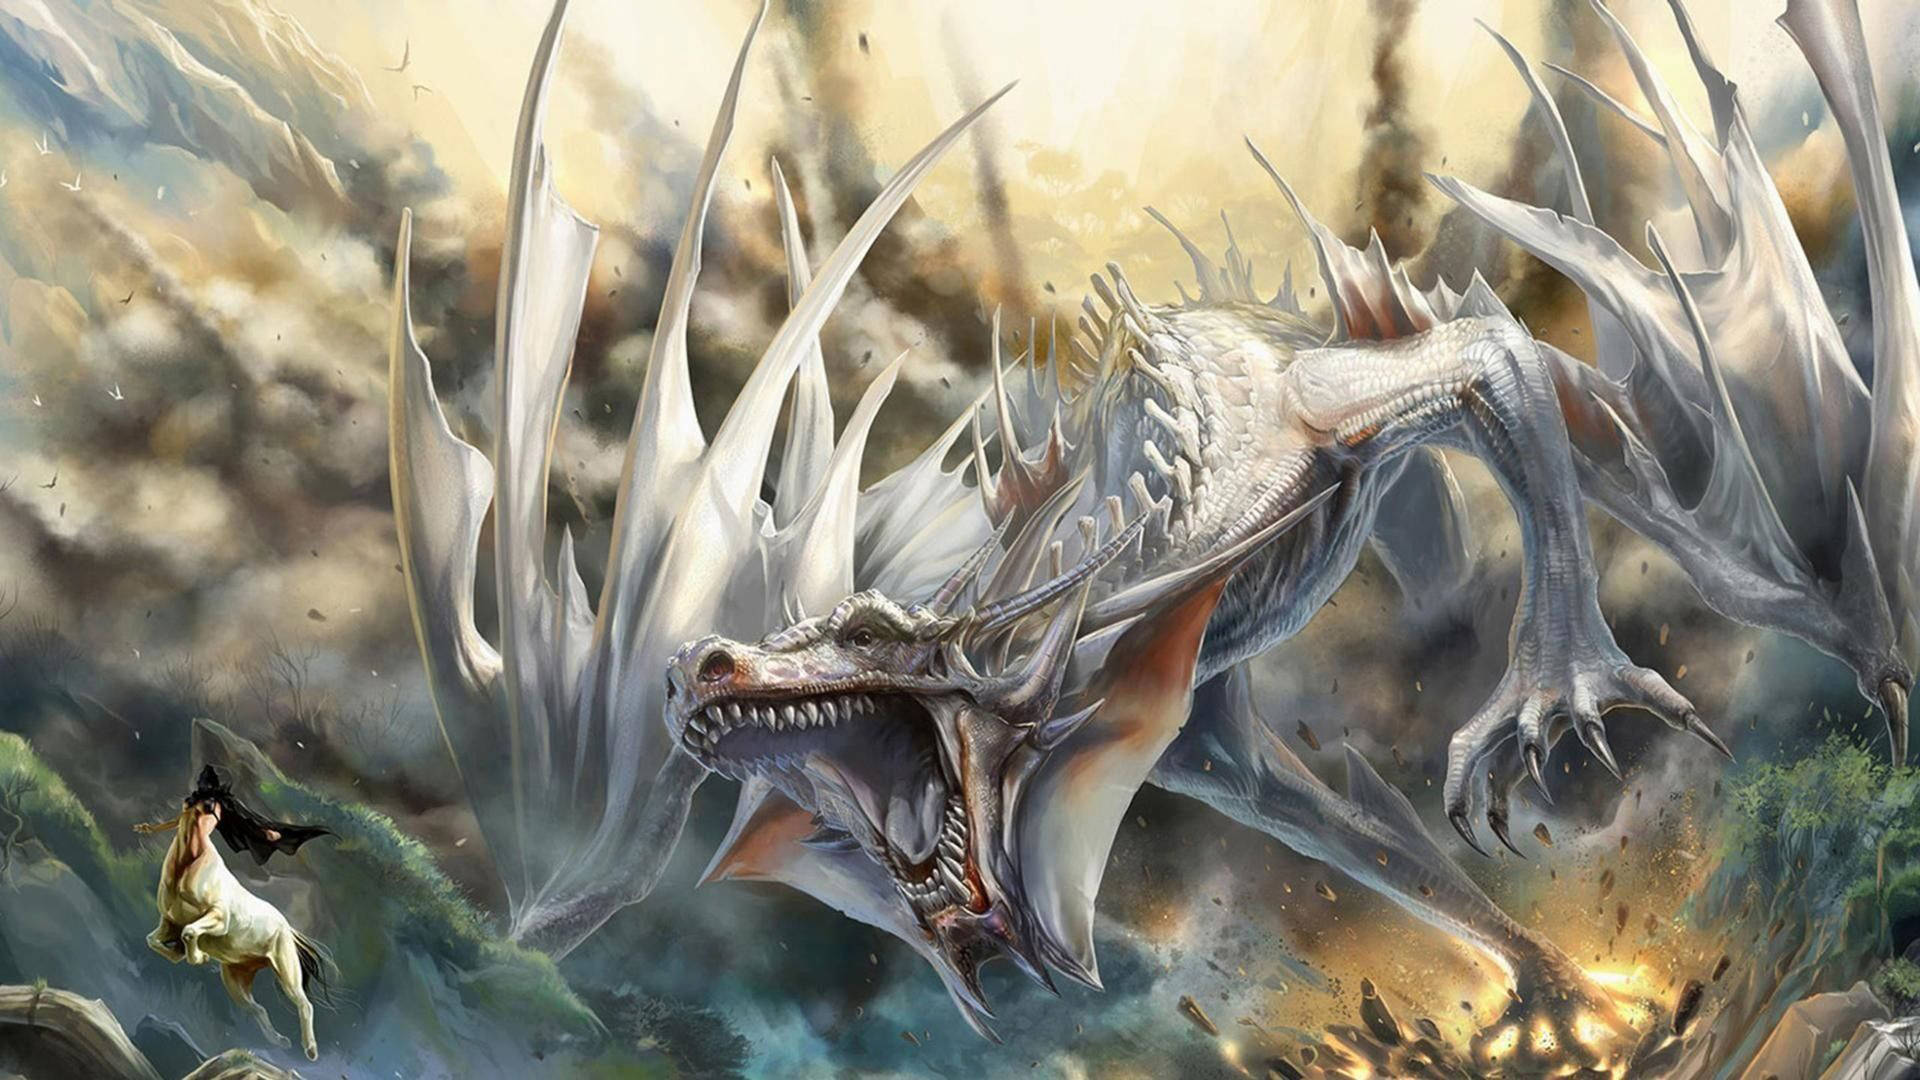 Hybrid Eastern Dragon Background